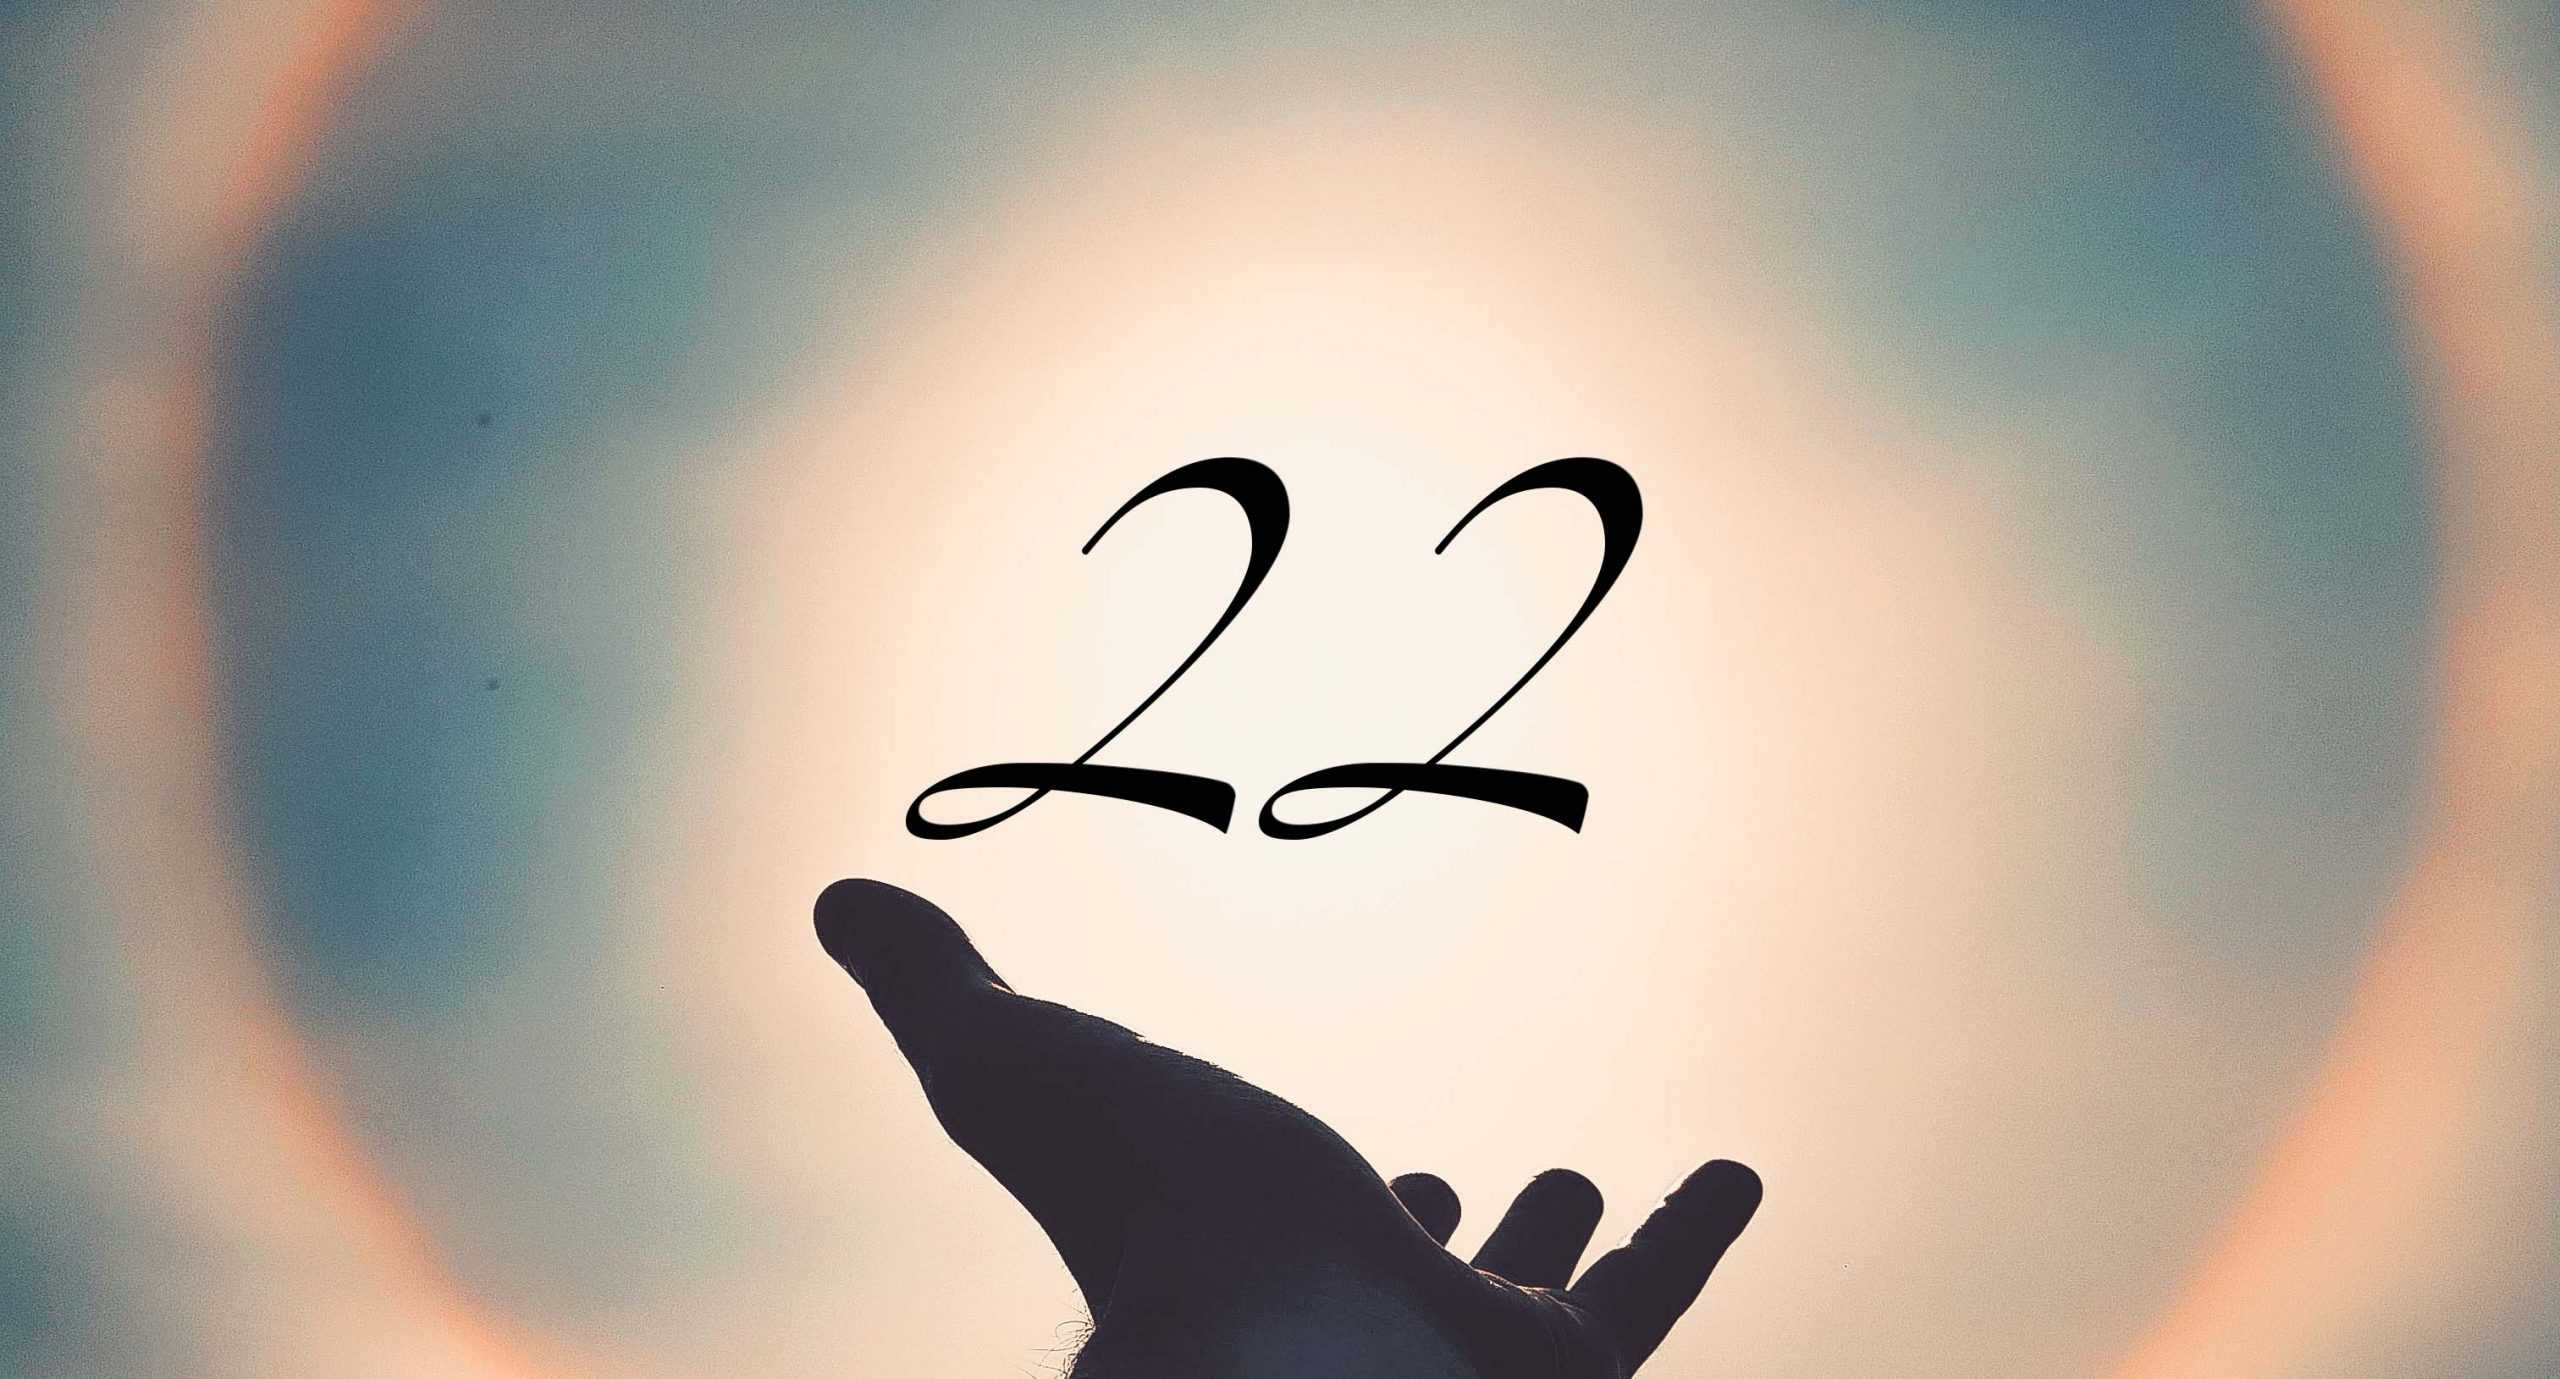 Signification du nombre 22